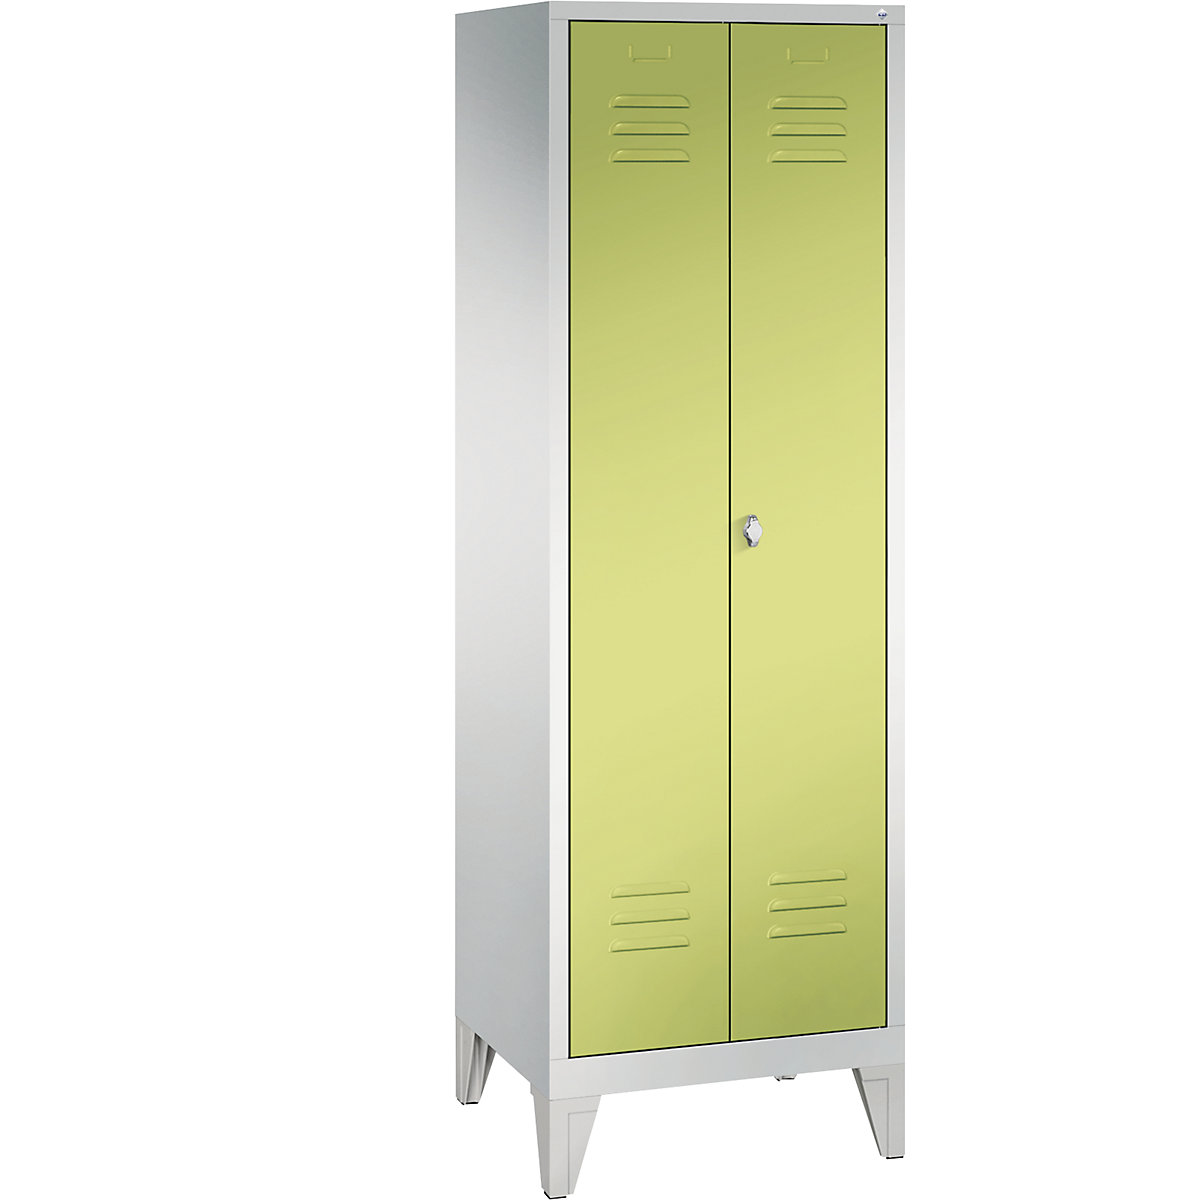 Garderobna omara CLASSIC z nogami in dvokrilnimi vrati na stik – C+P, 2 predelka, širina 300 mm/predelek, svetlo sive / rumeno zelene barve-13